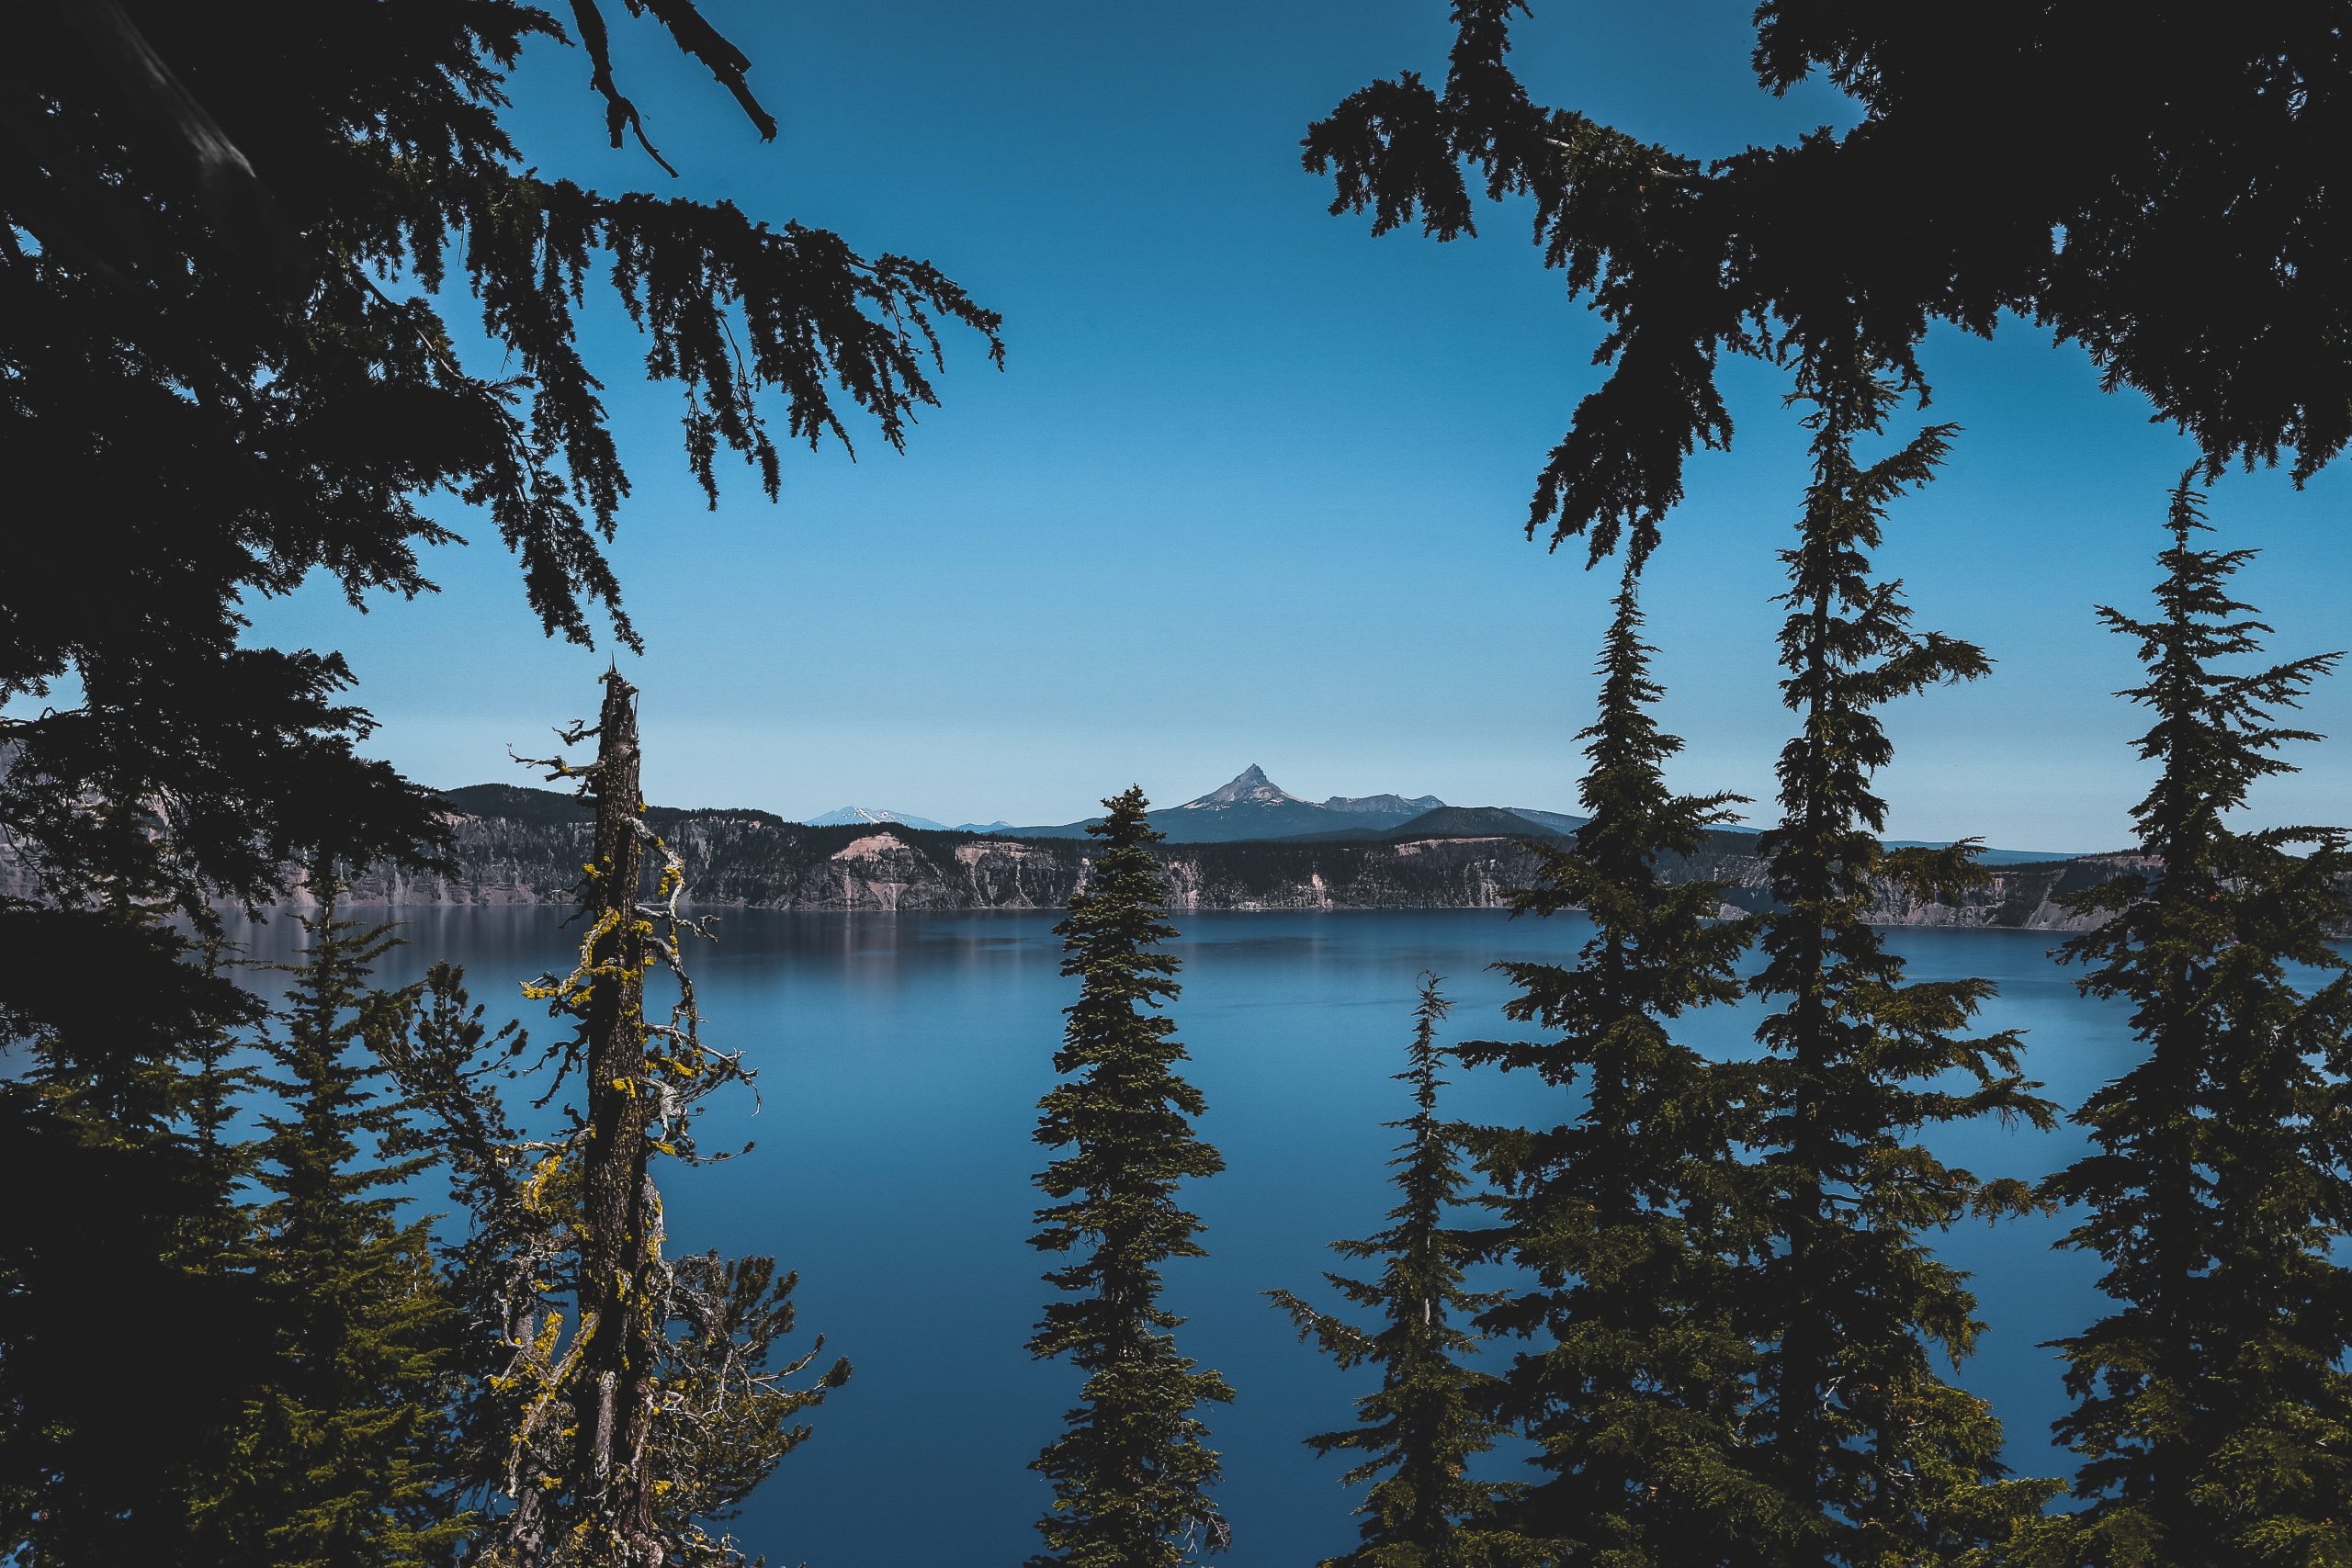 trees, lake, and mountain